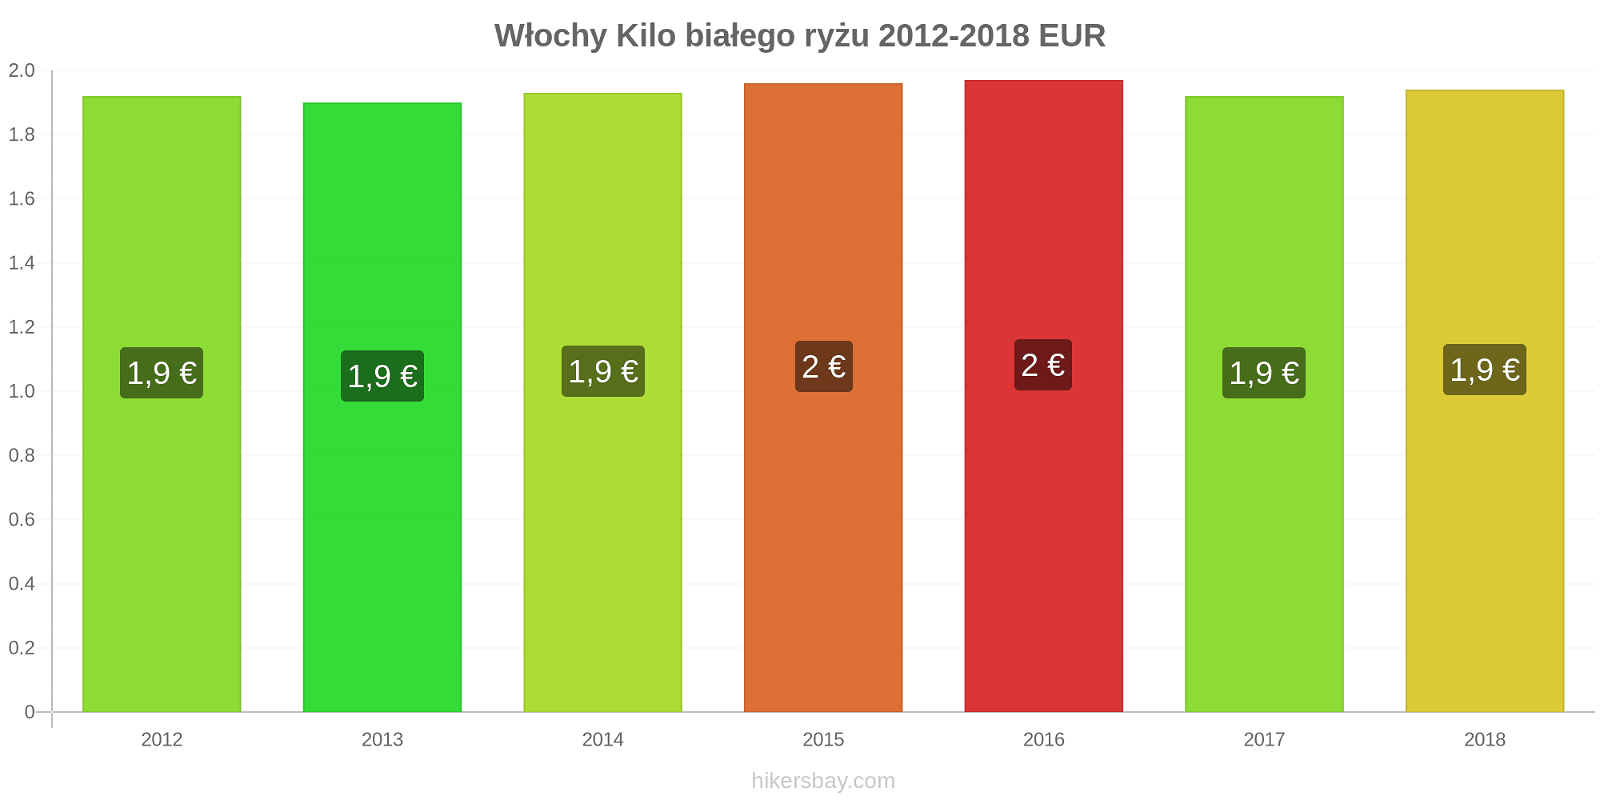 Włochy zmiany cen Kilo białego ryżu hikersbay.com